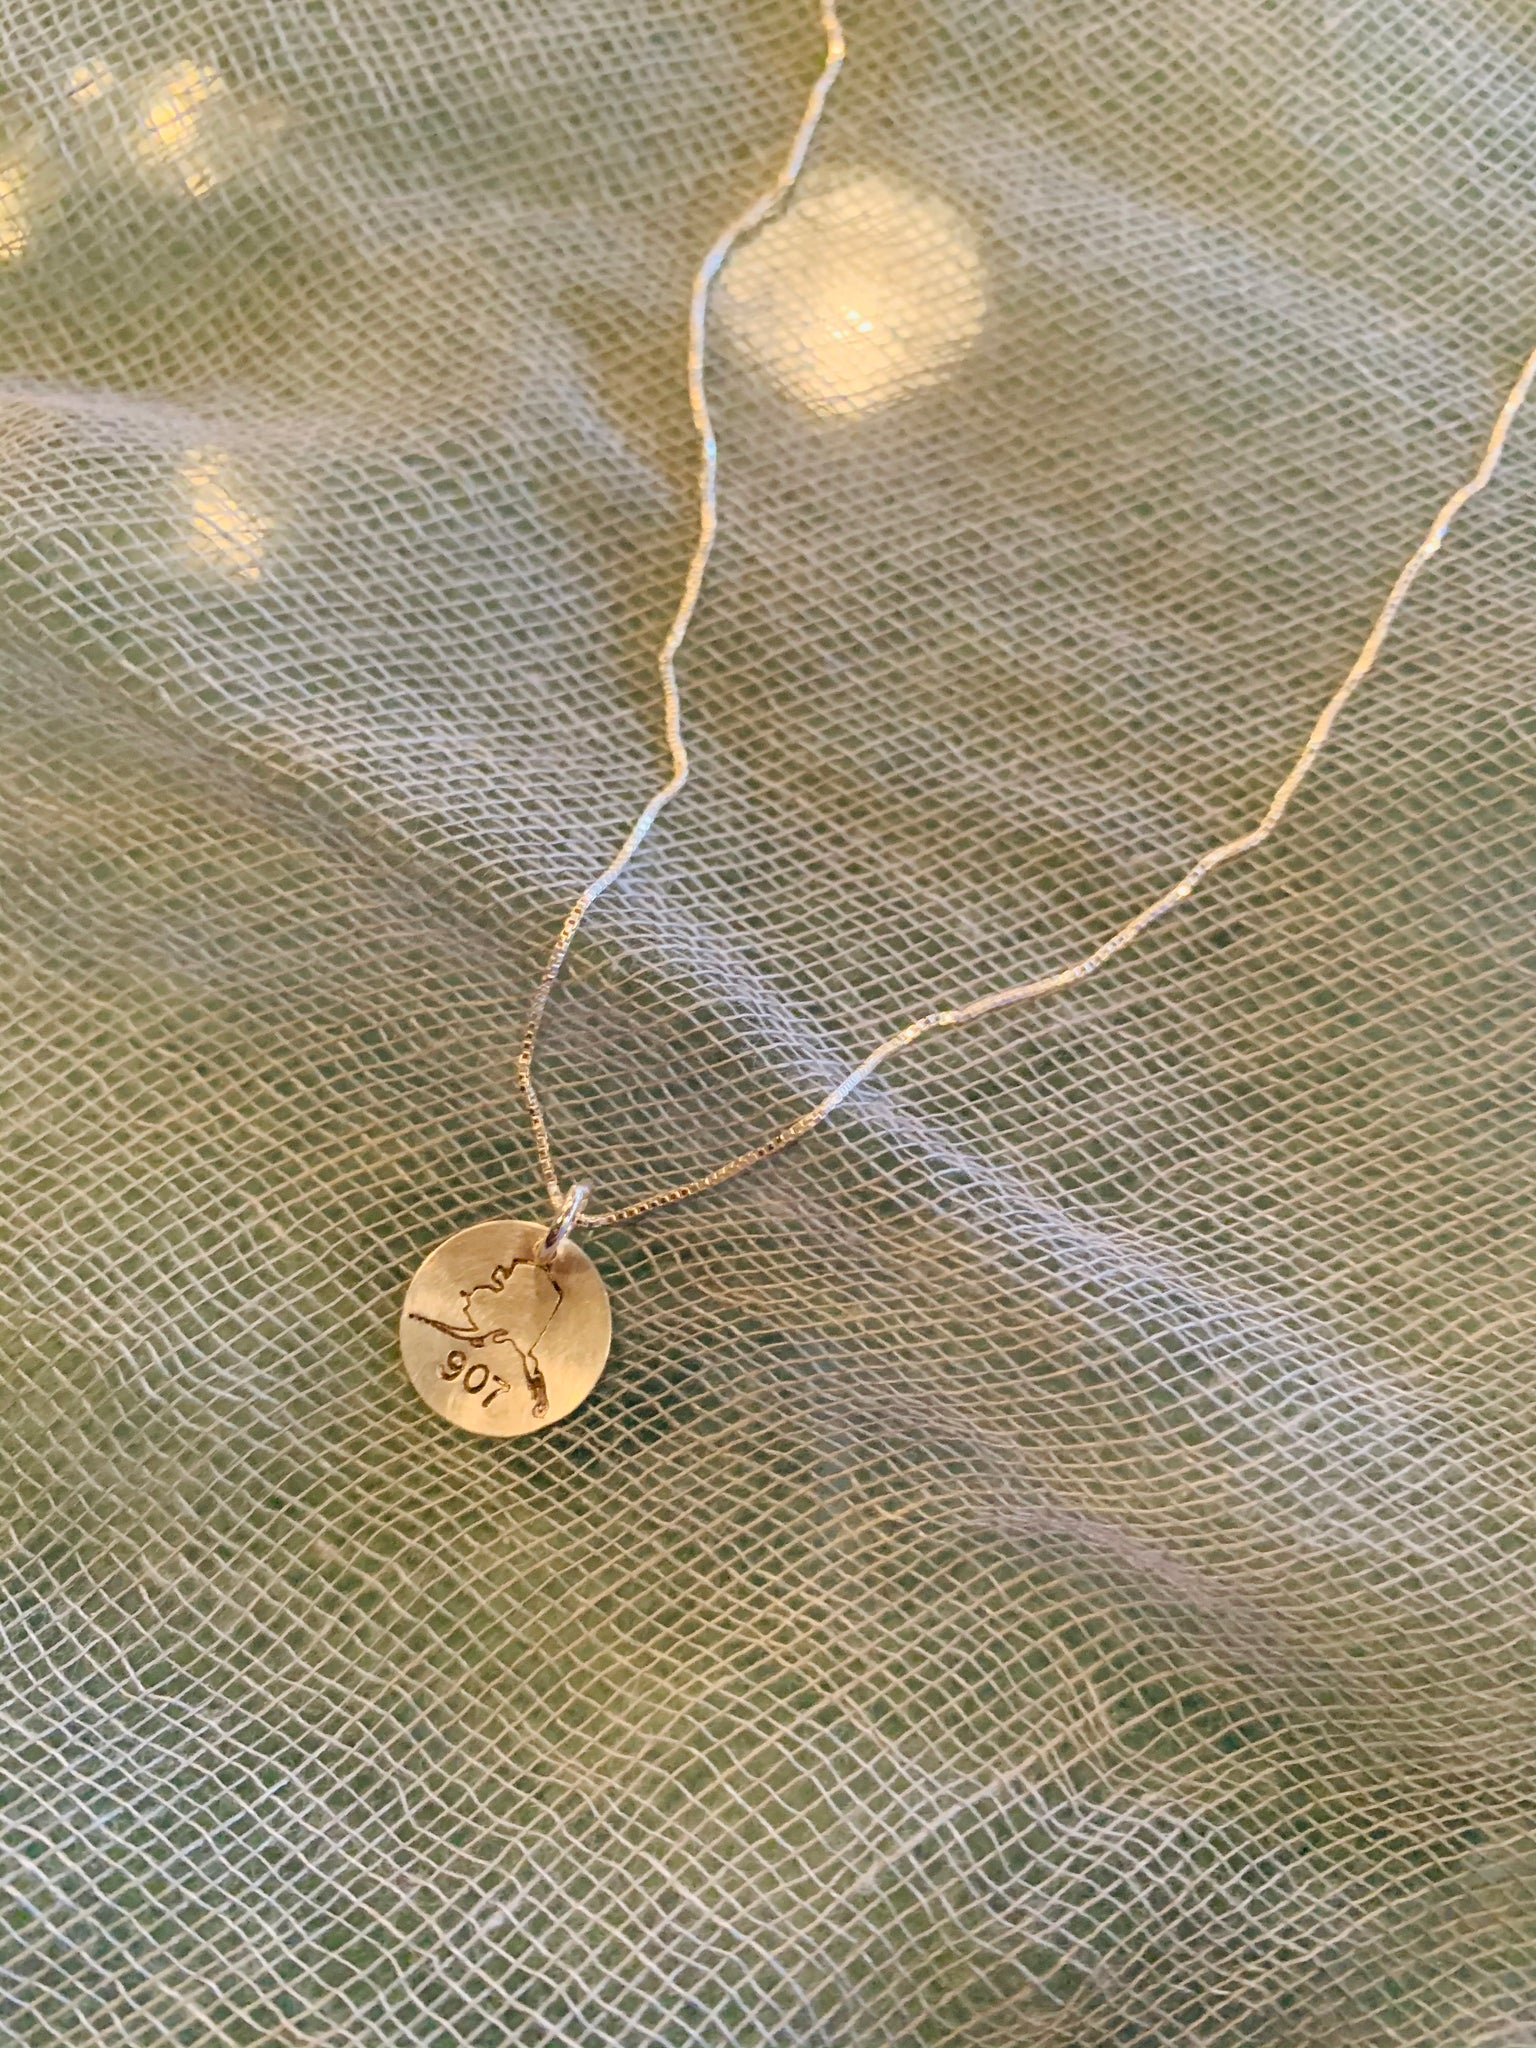 Alaska 907 Sterling Silver Stamped Necklace